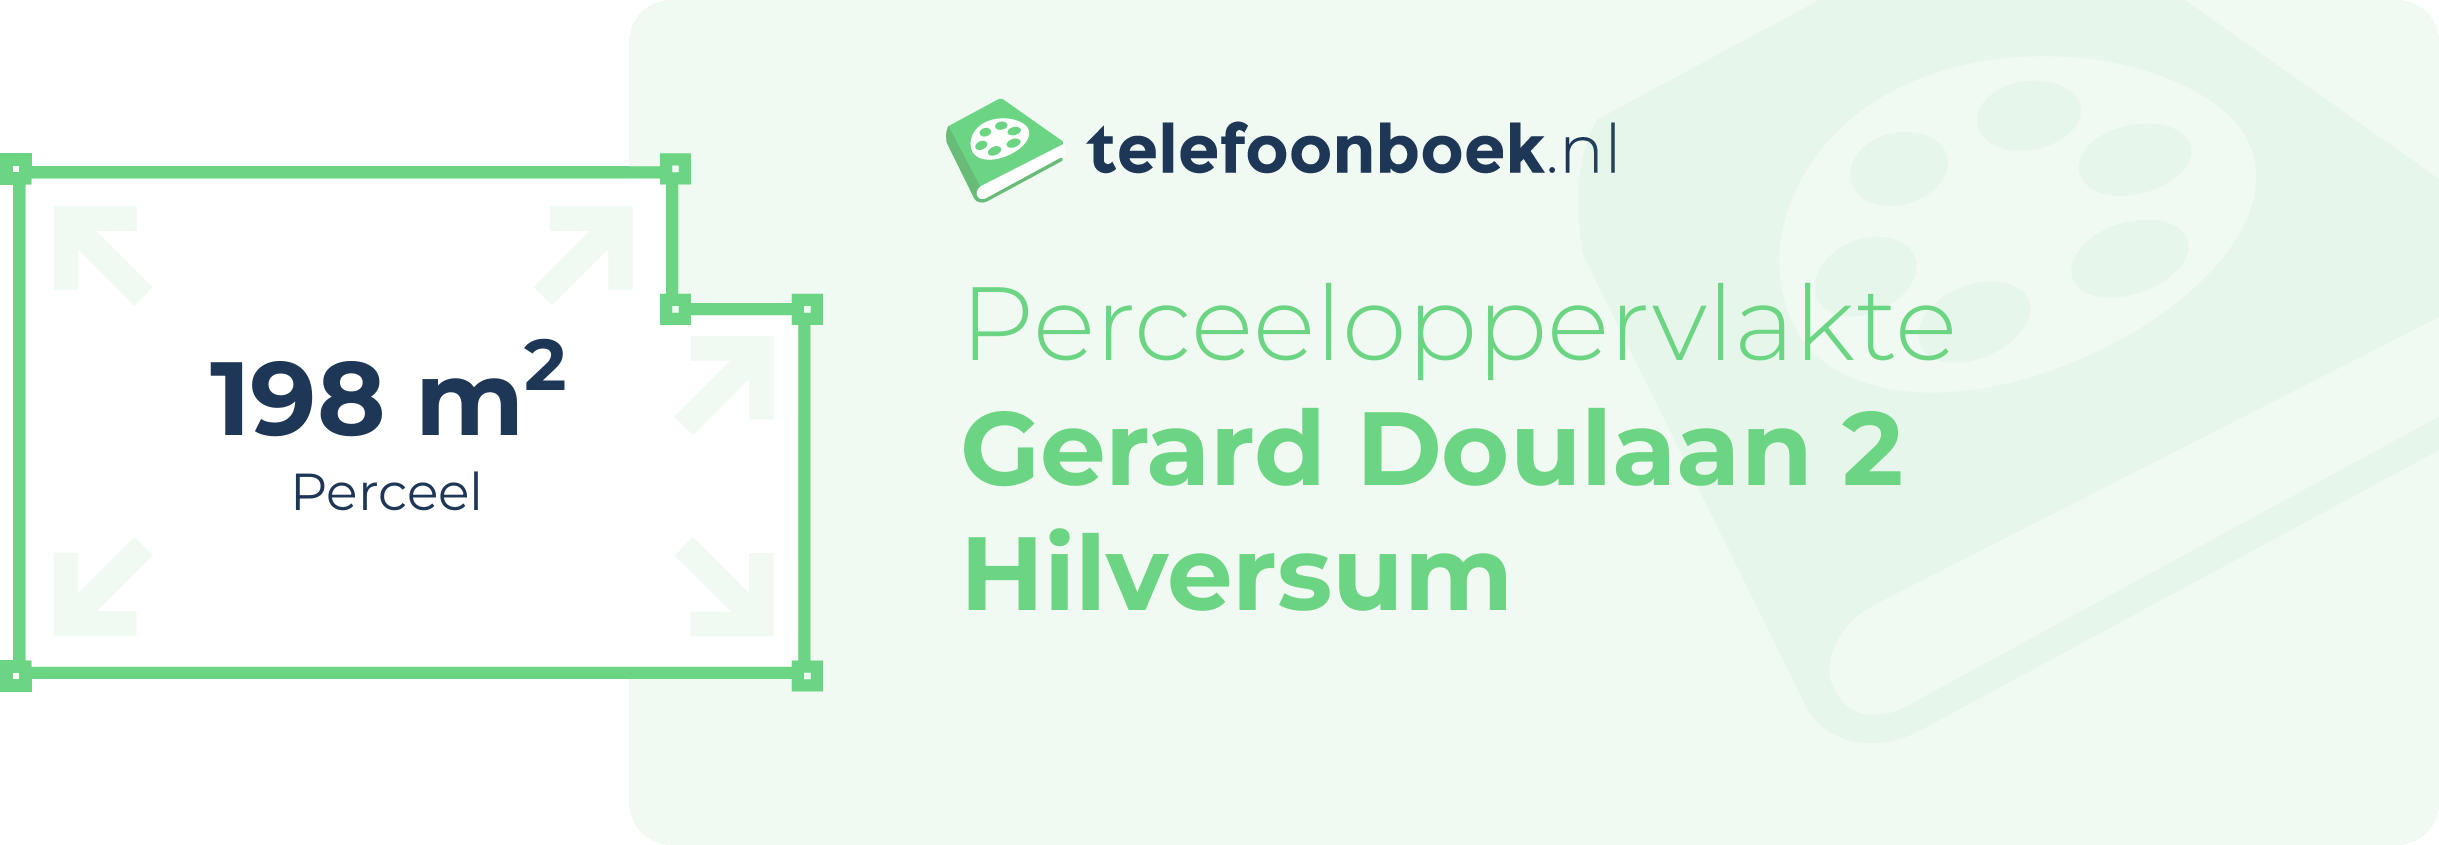 Perceeloppervlakte Gerard Doulaan 2 Hilversum